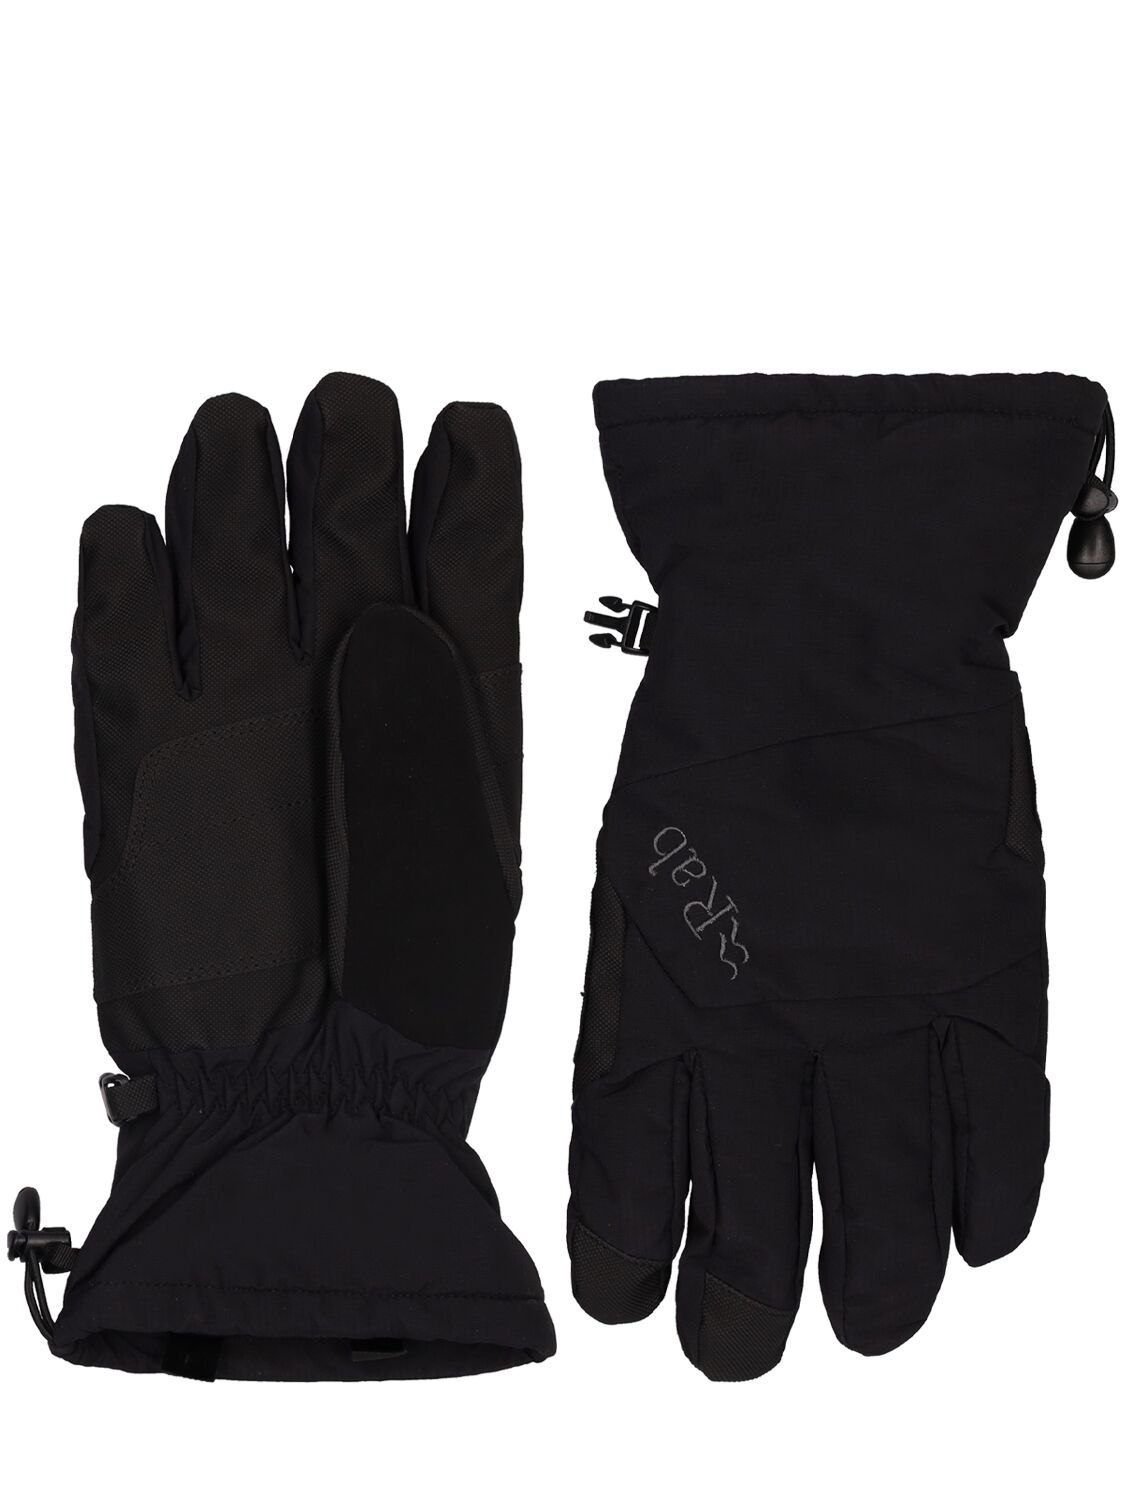 Rab Storm Ski Gloves In Black